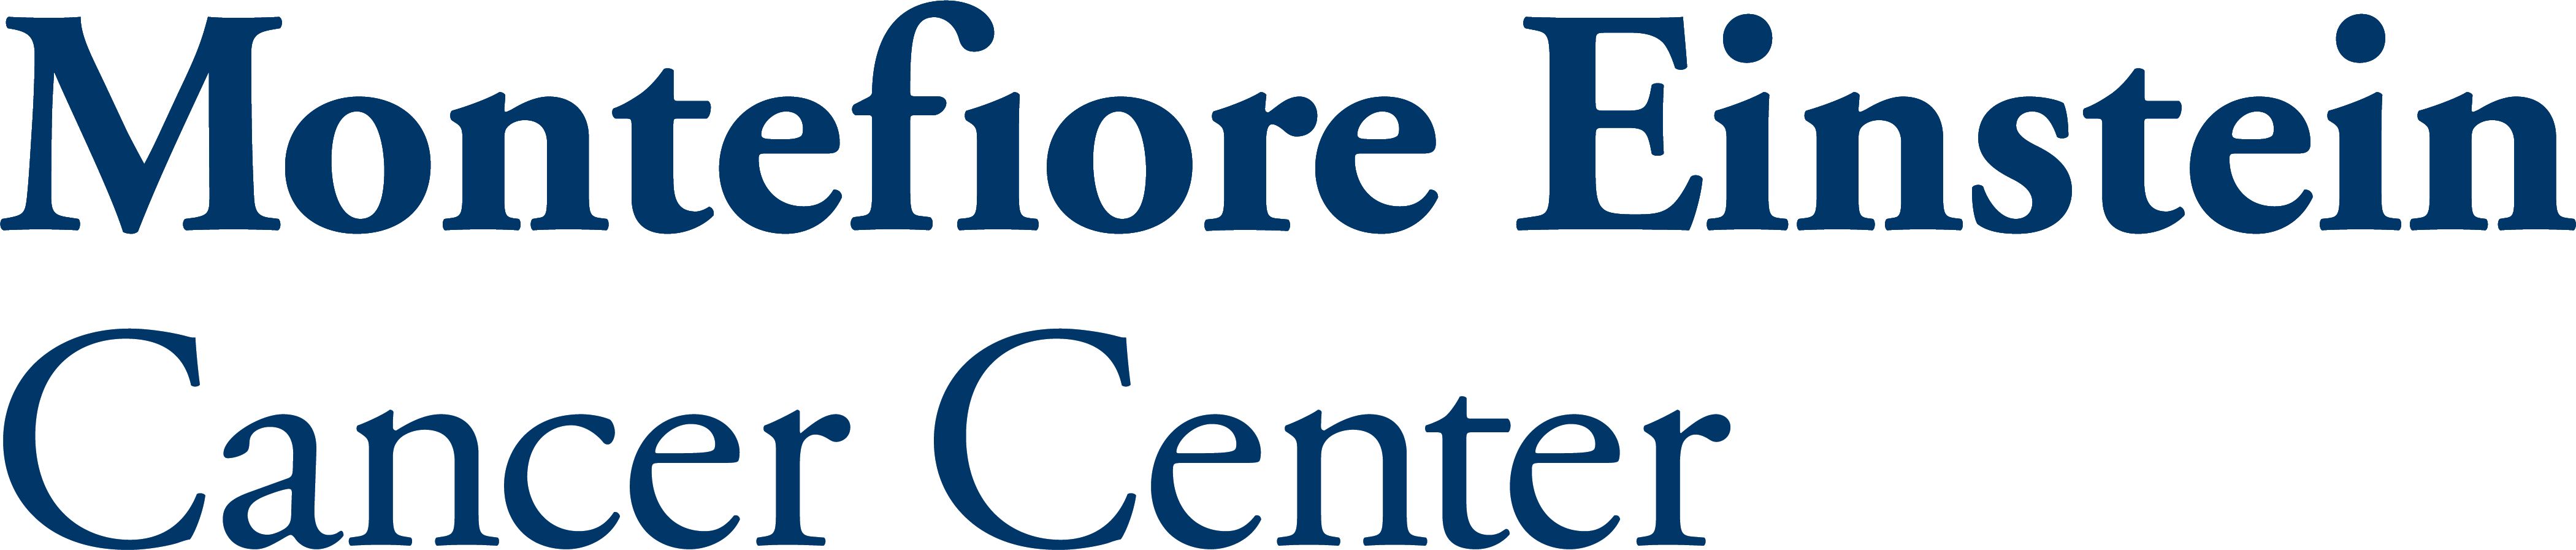 Partner | Cancer Centers | <b>Montefiore Einstein Cancer Center</b>